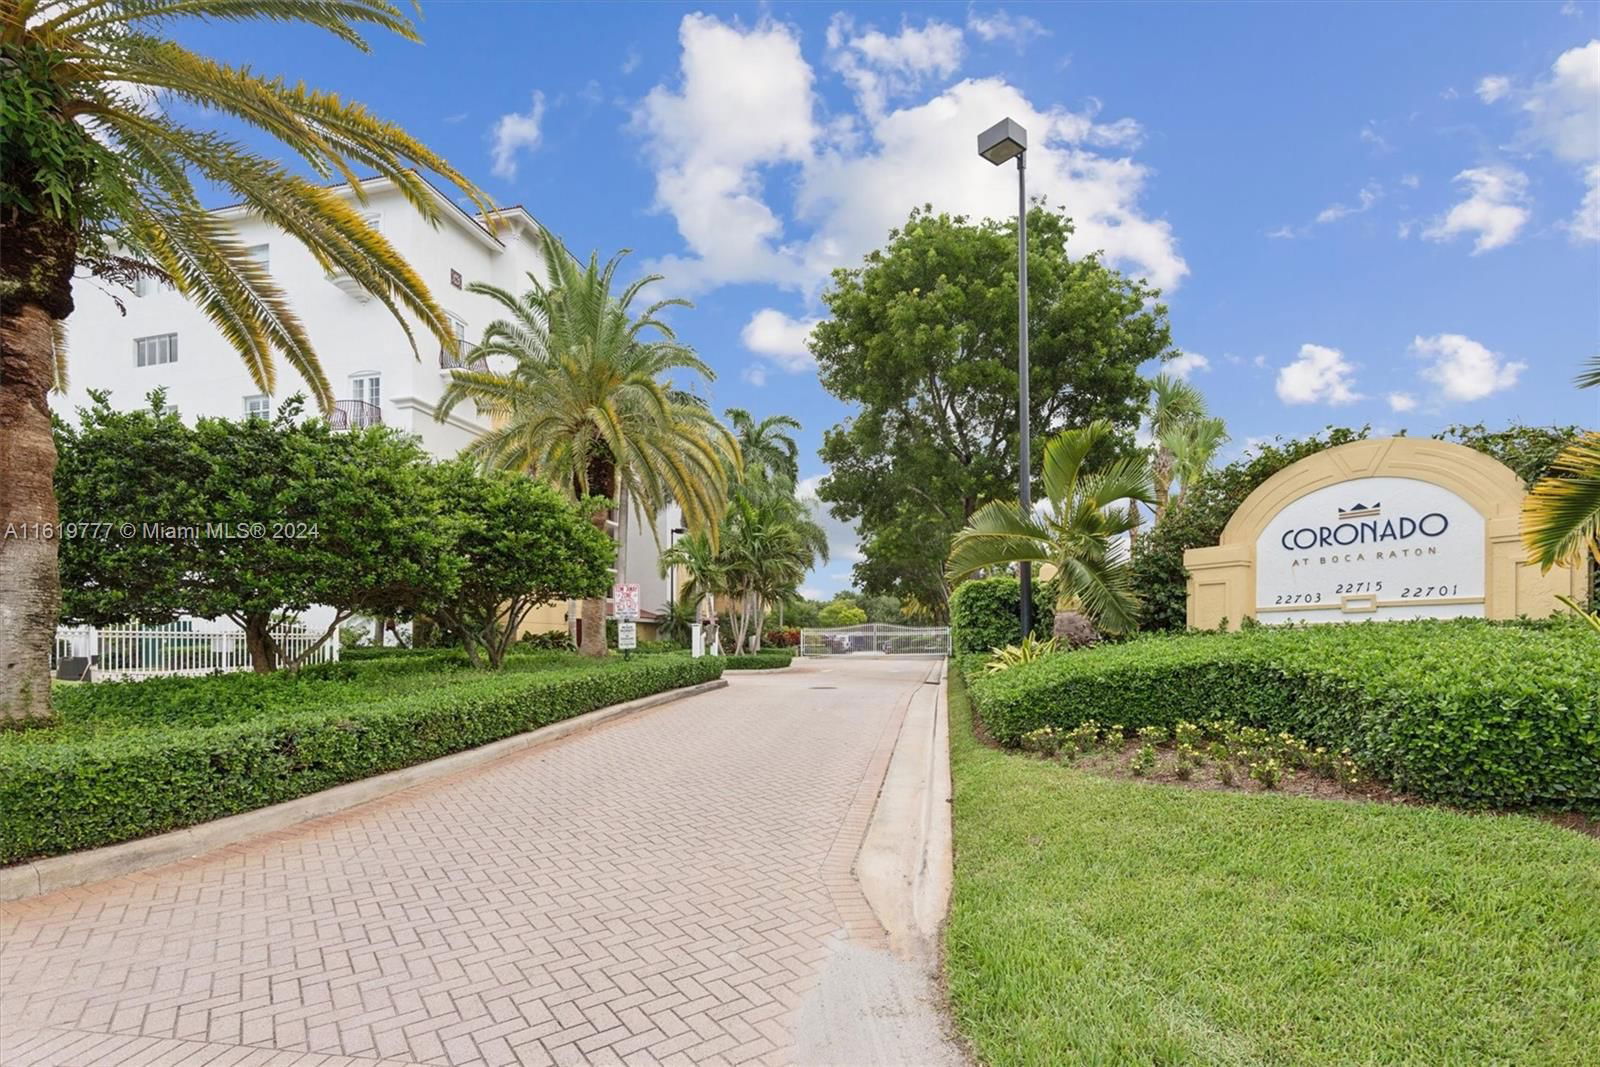 Real estate property located at 22715 Camino Del Mar #36, Palm Beach County, CORONADO AT BOCA RATON CO, Boca Raton, FL